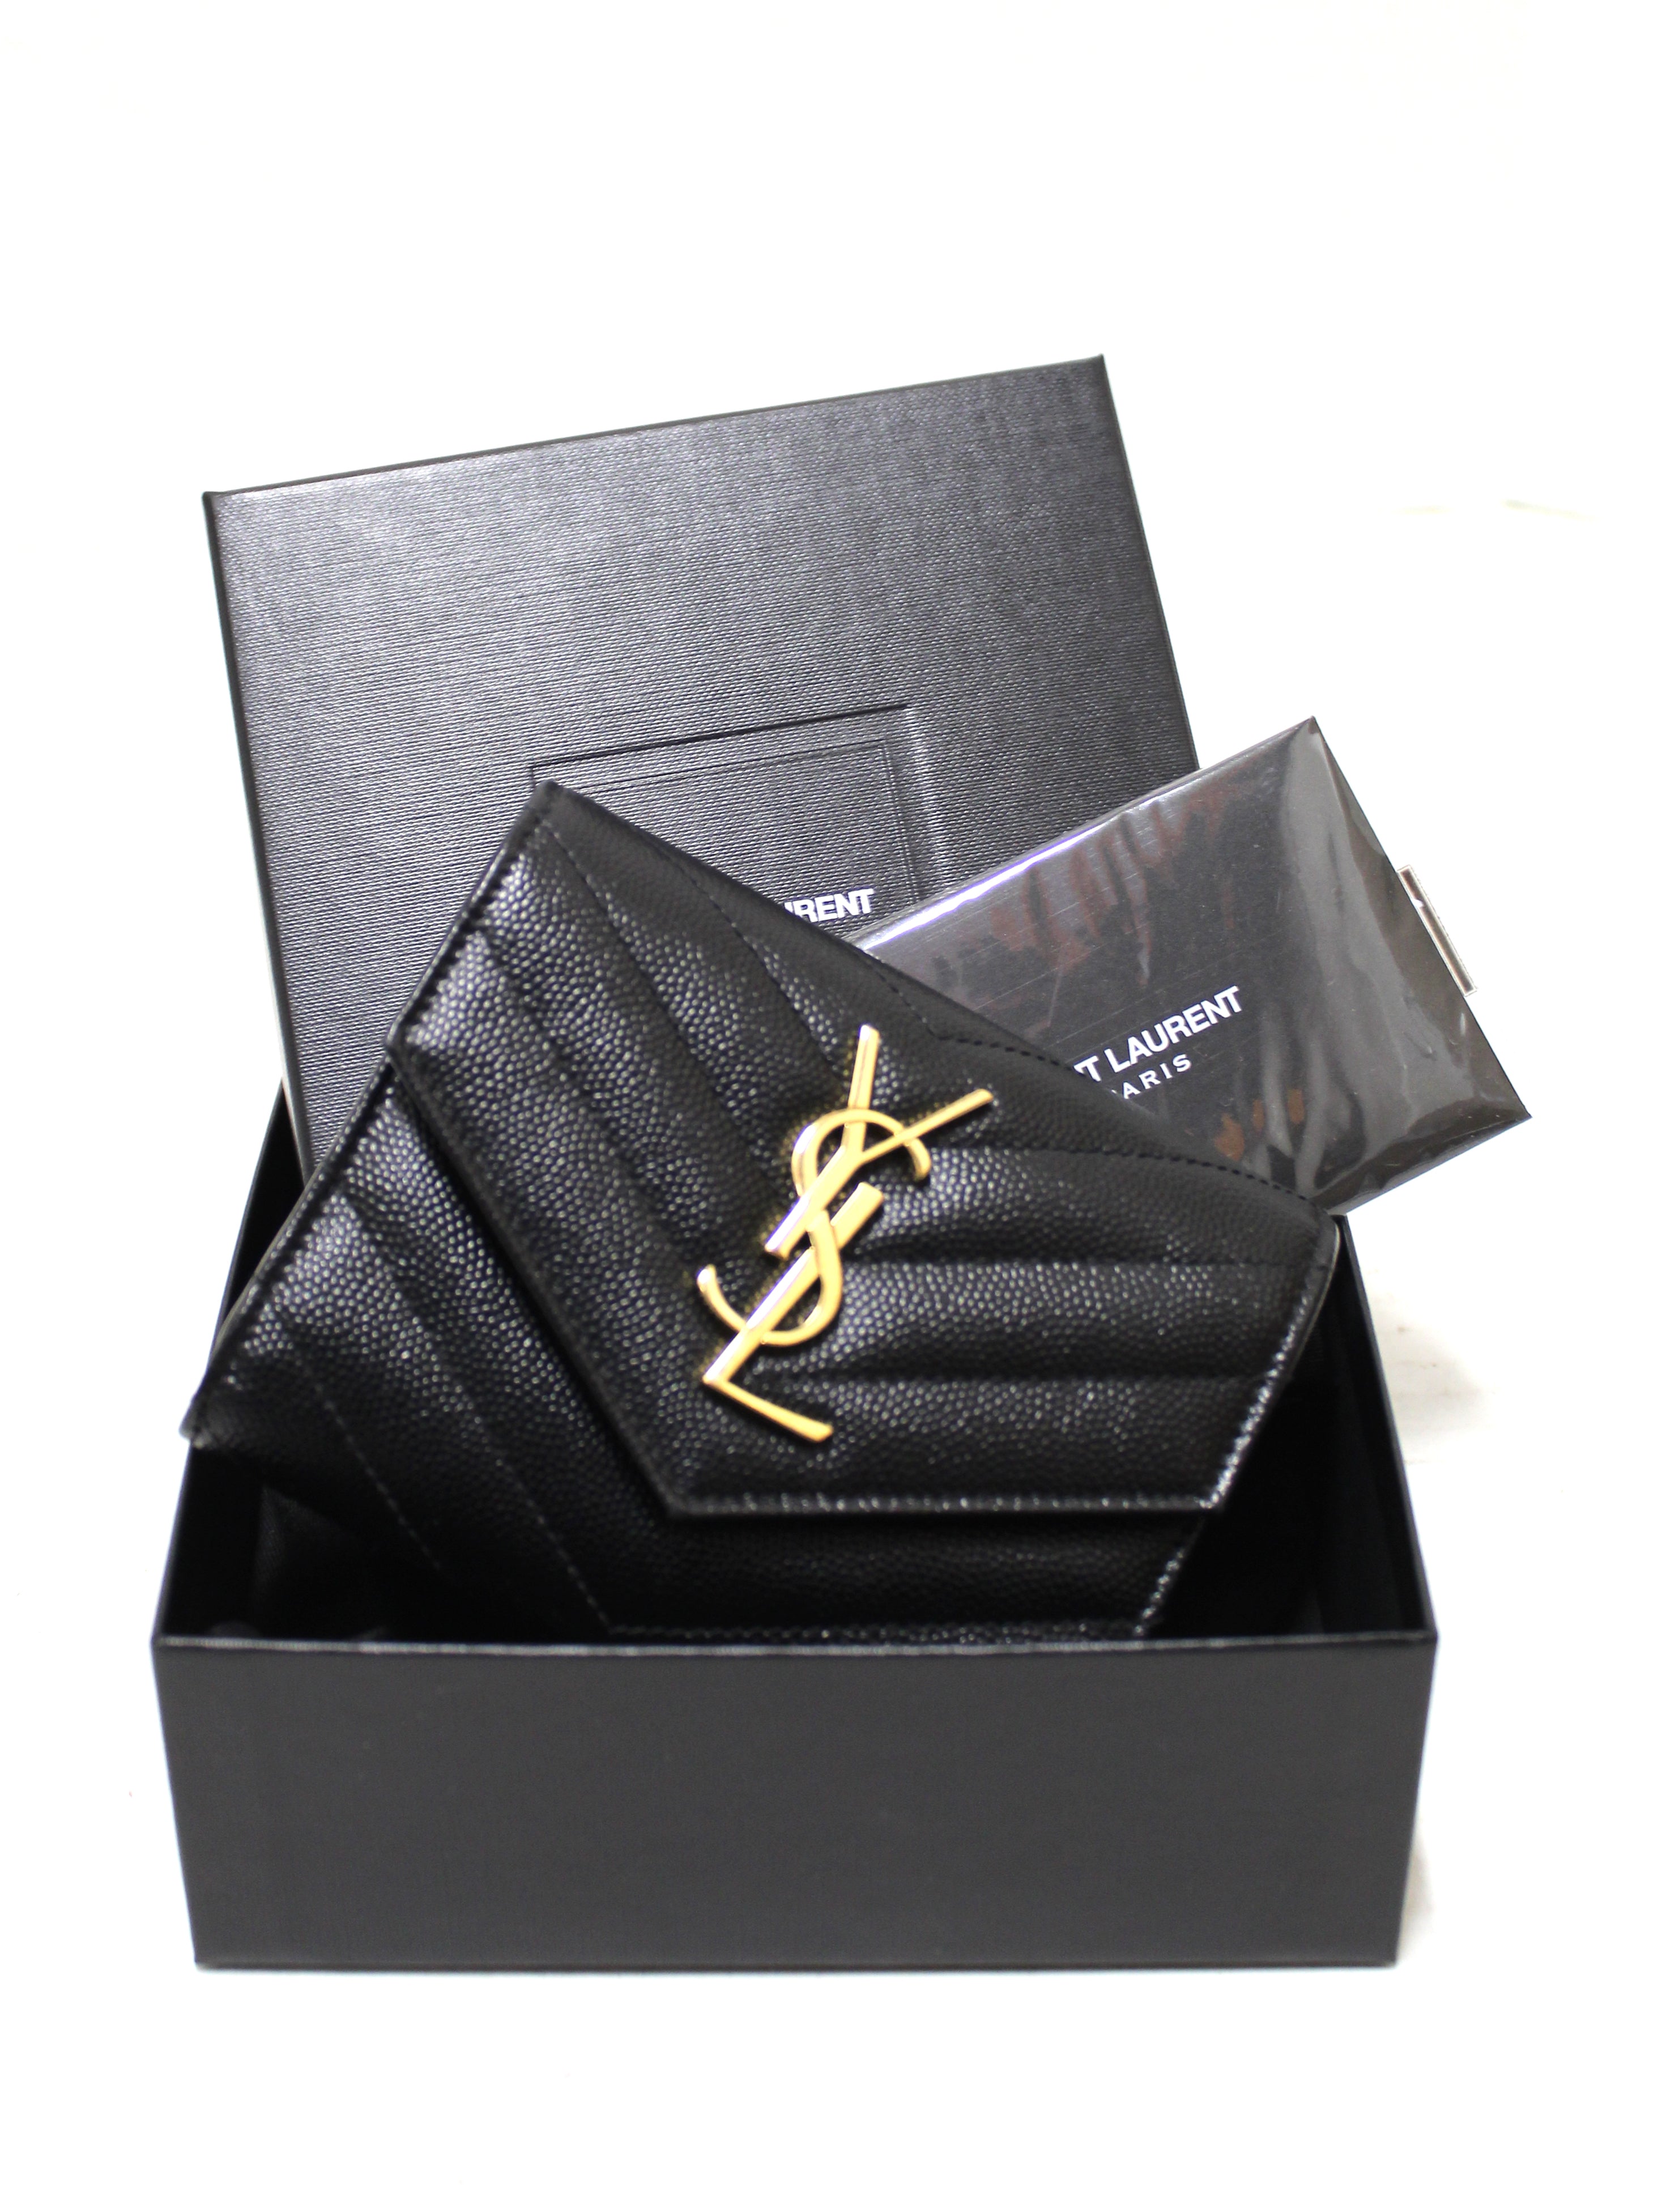 Authentic Yves Saint Laurent Black Monogram Small Grain de Poudre Tri-Fold Wallet